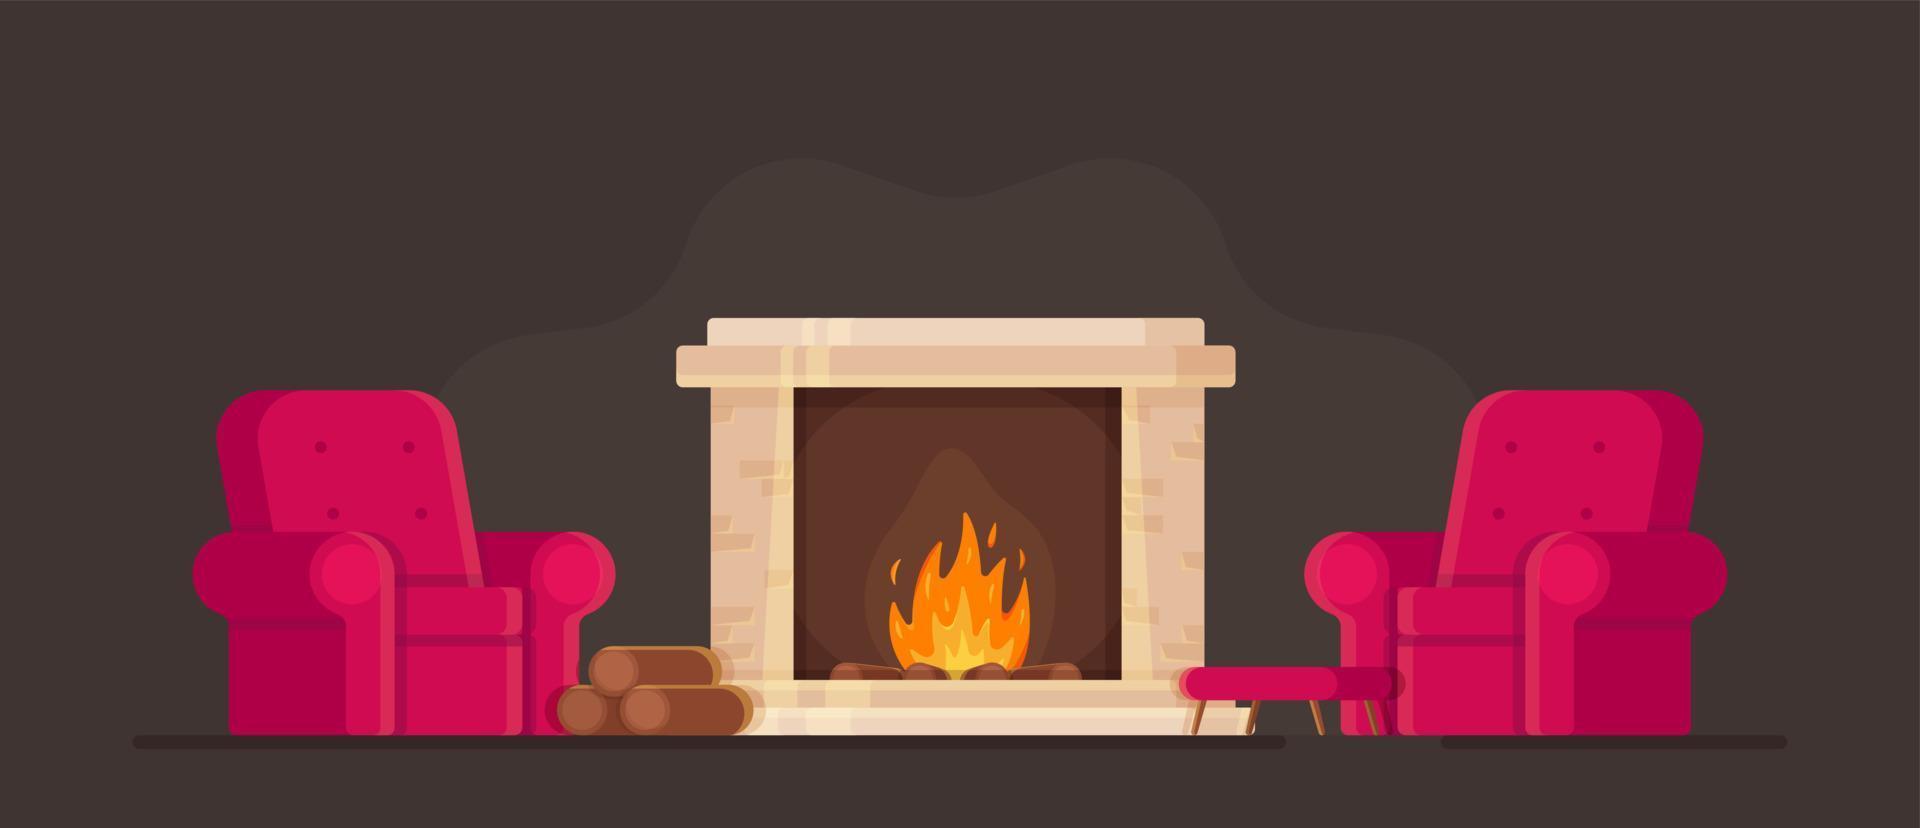 illustration vectorielle du concept d'une pièce confortable avec une cheminée et des fauteuils. se prélasser au coin du feu pendant la saison froide. vecteur